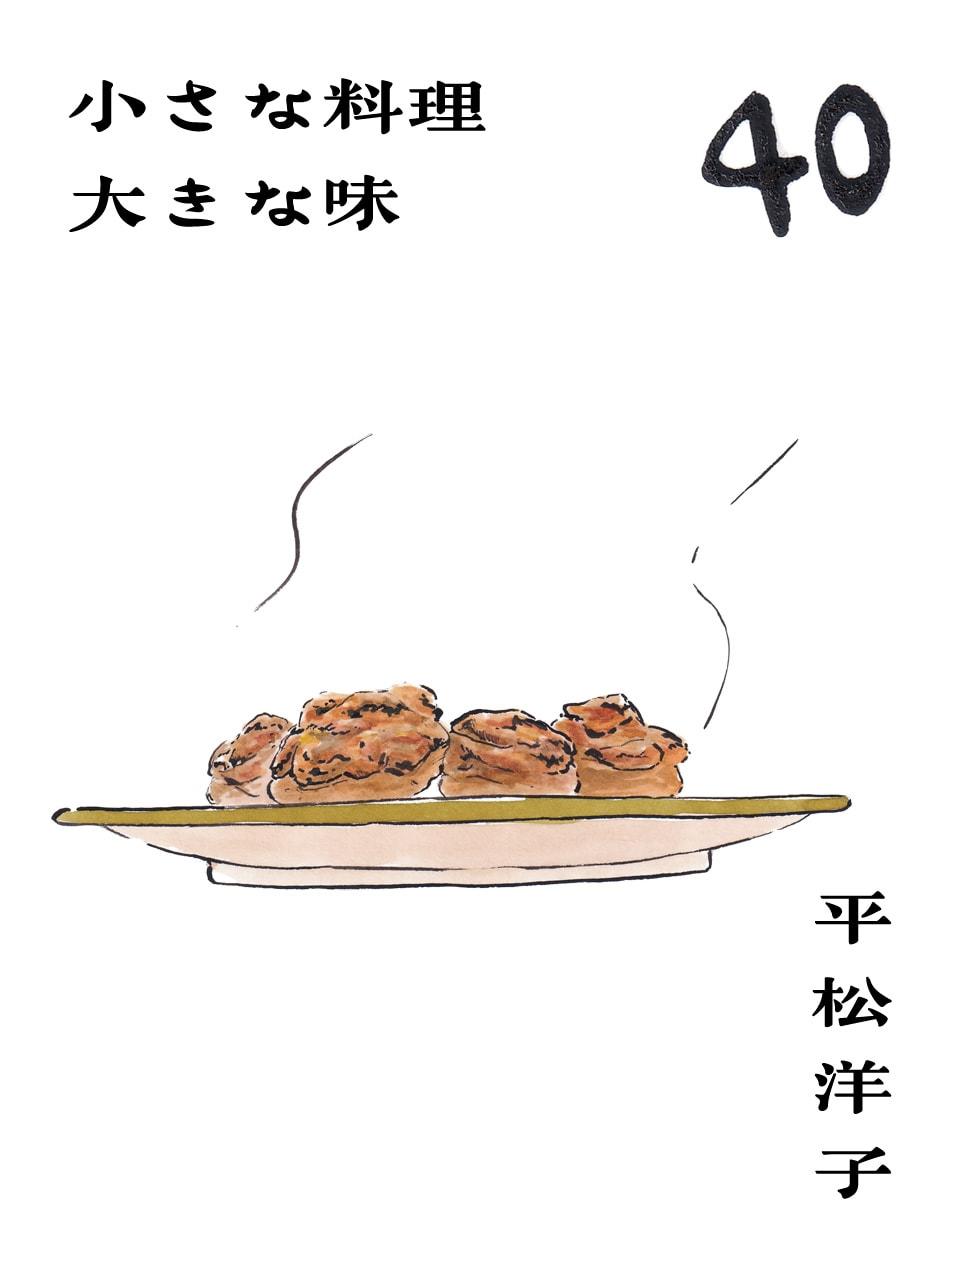 保存のために“味噌だれに漬ける”のもひとつの手。平松洋子「小さな料理 大きな味」Vol.40